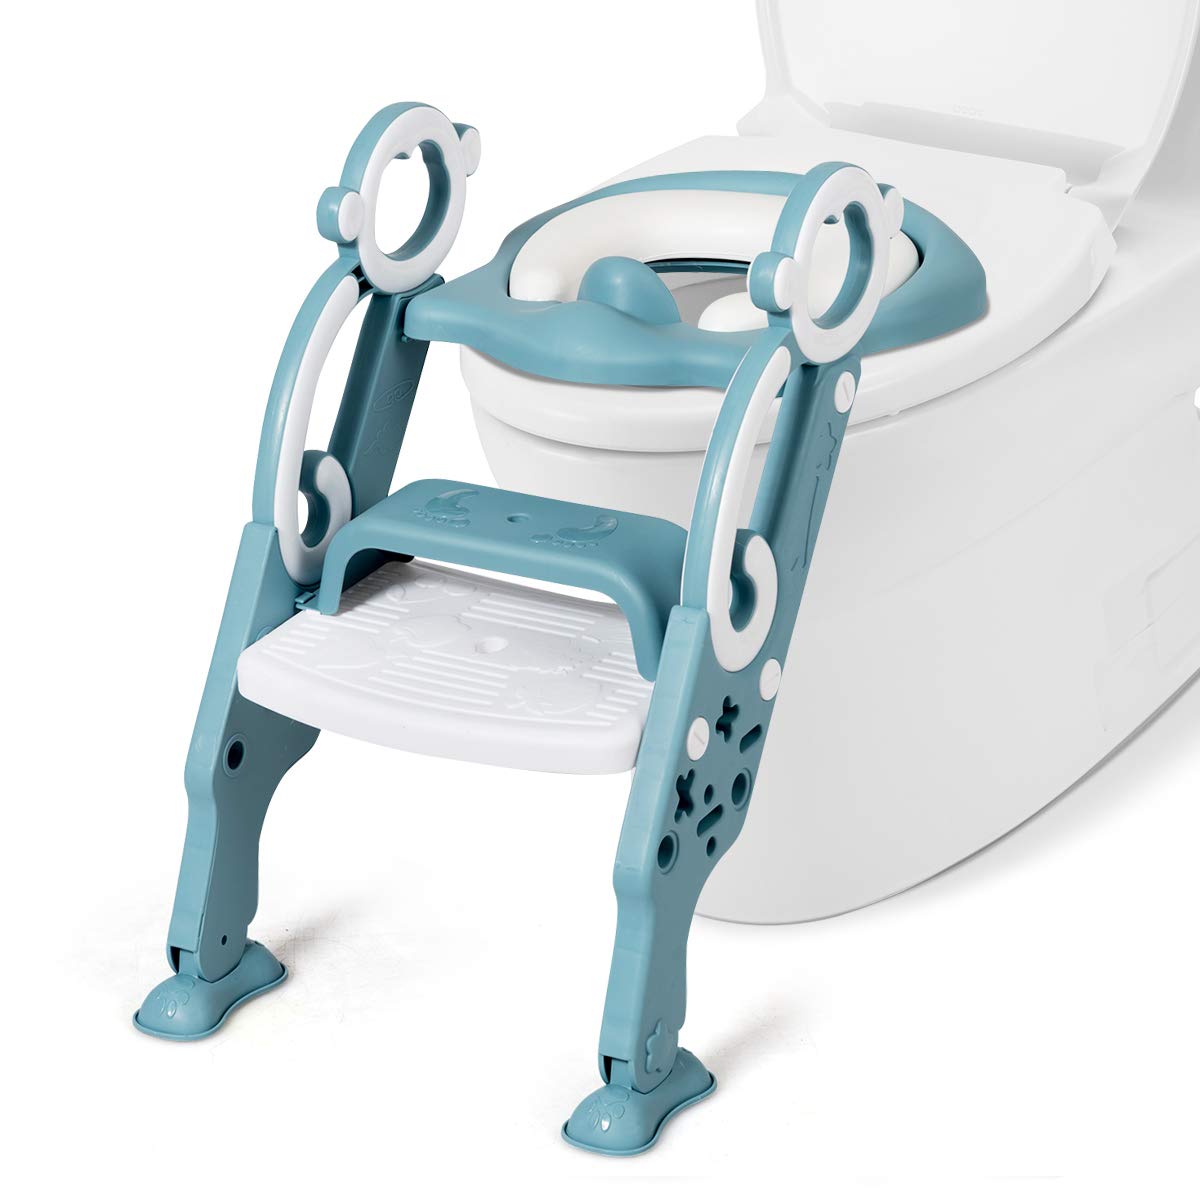 Badhilfe Kleinkind Trainingssitze tragbares Design grün-blau Straame Kinder-WC-Sitz Höhenverstellbarer Tritthocker für Jungen und Mädchen